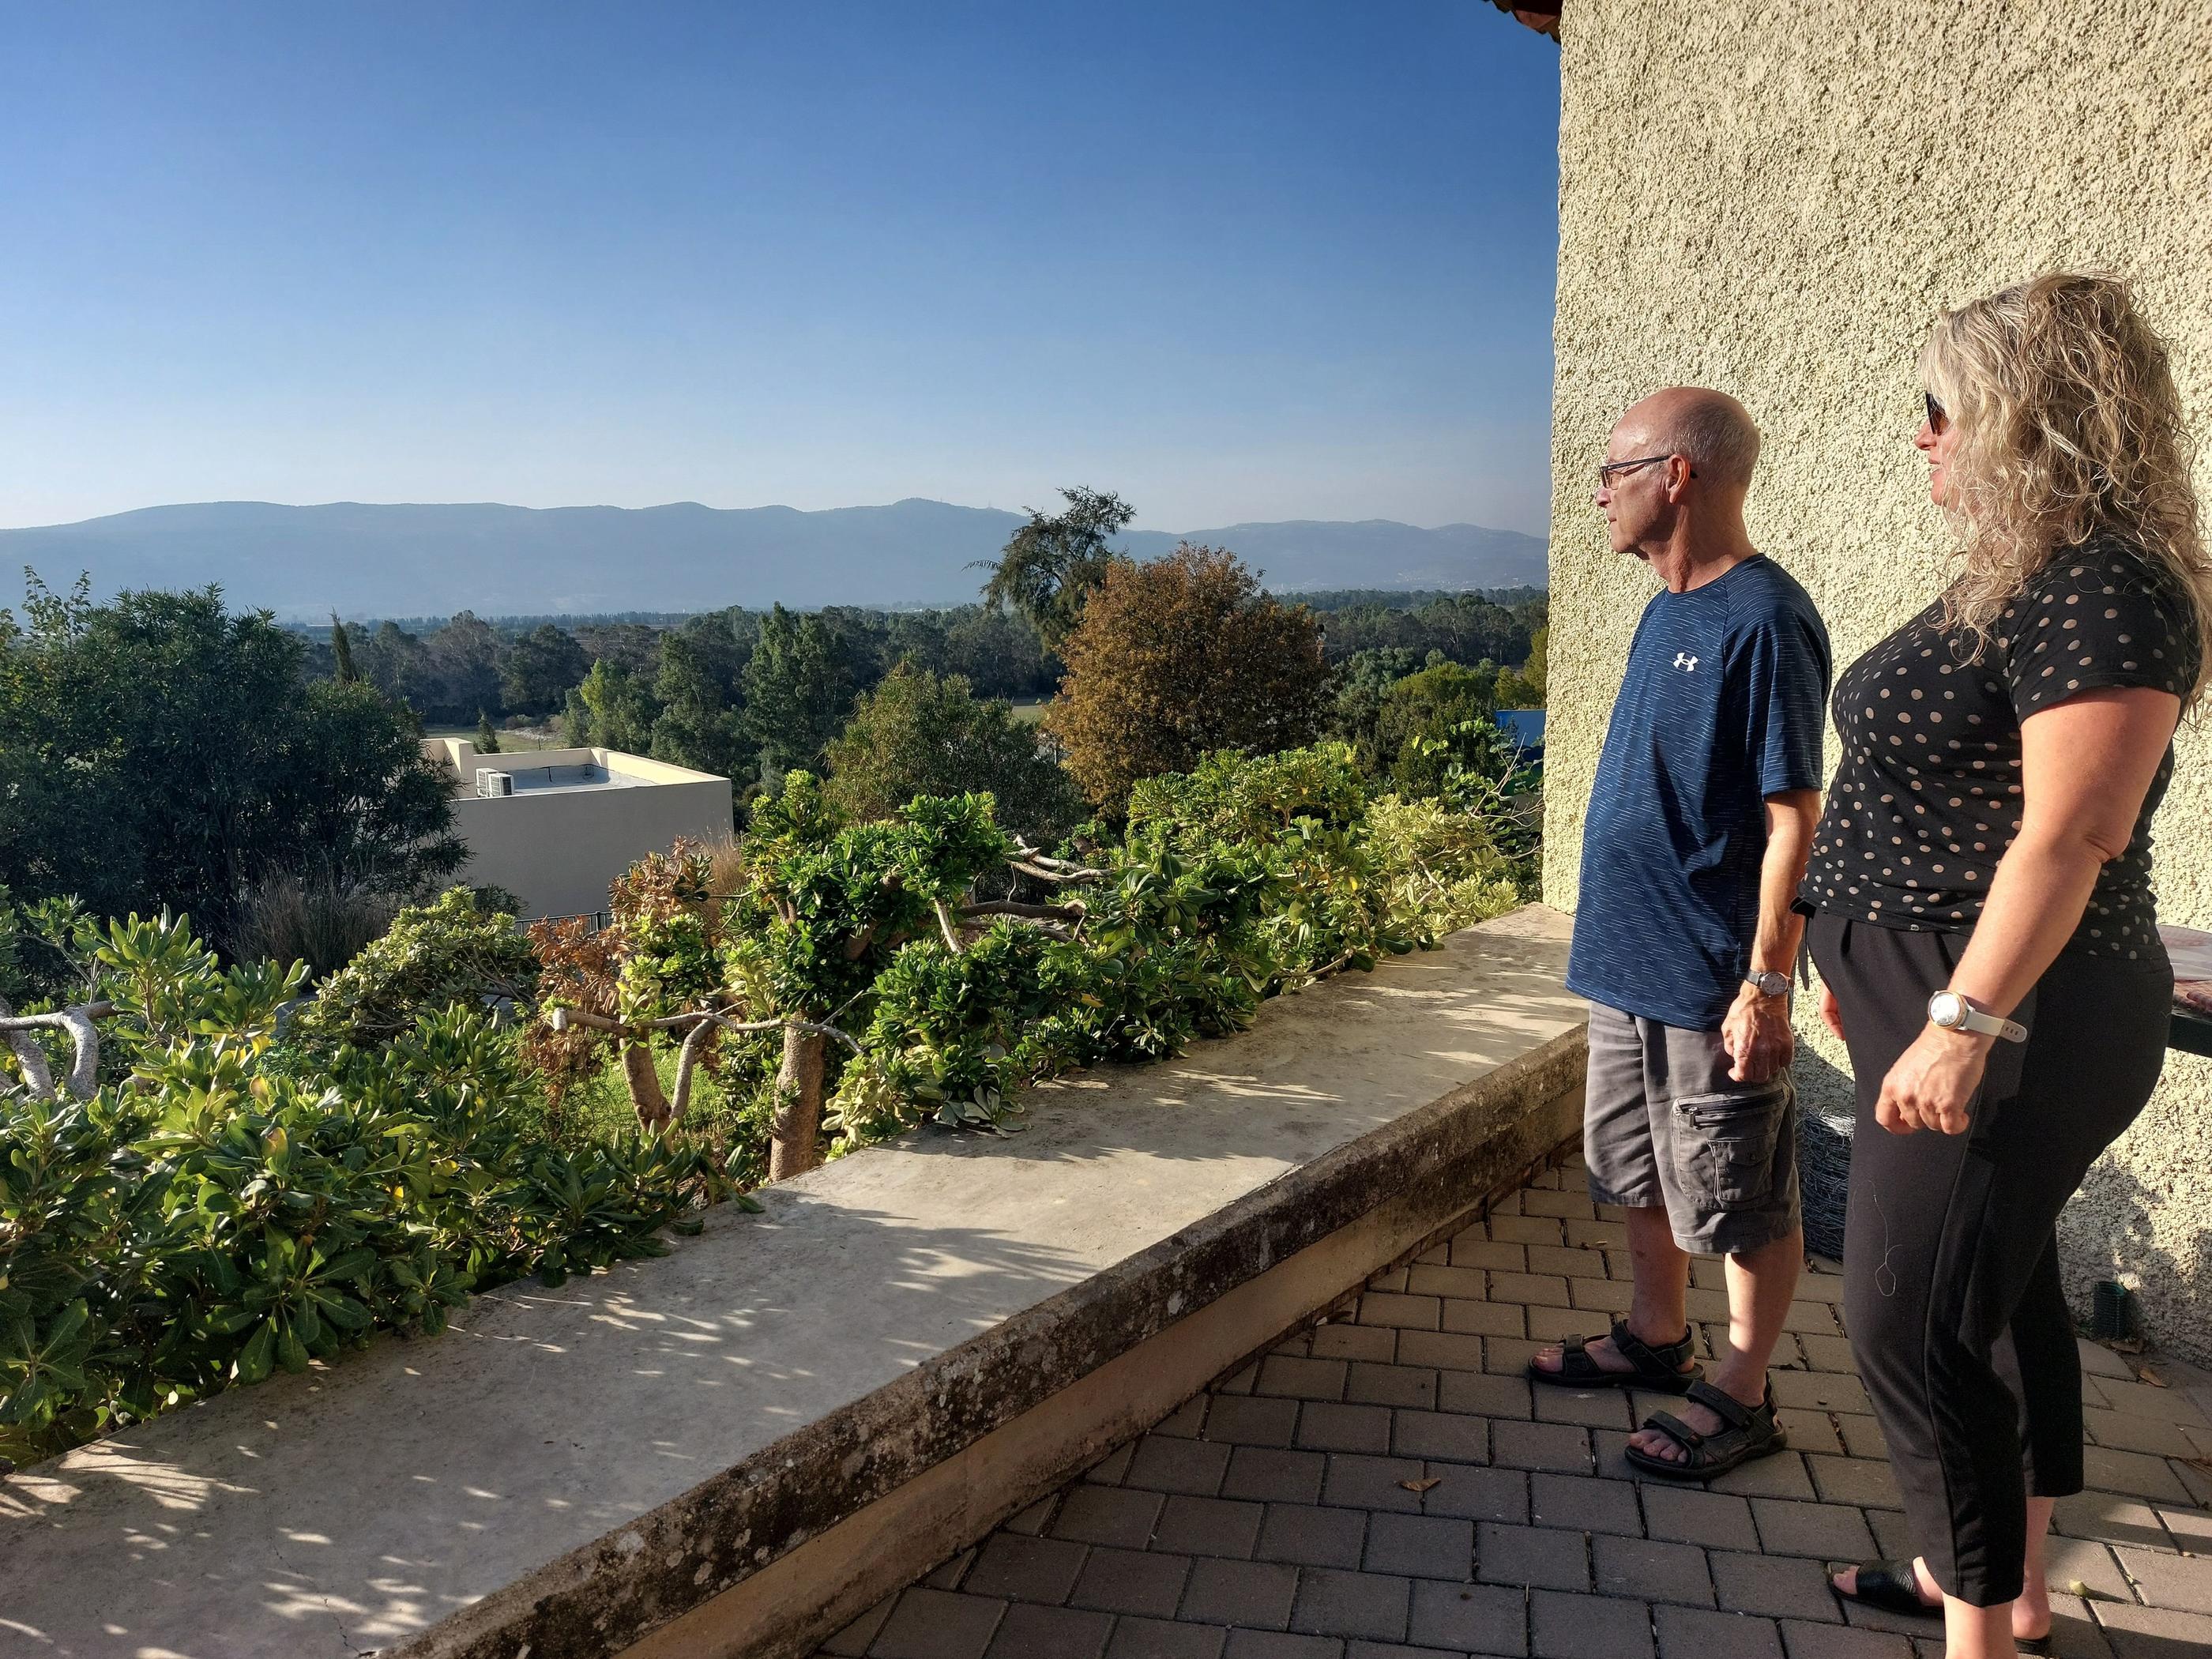 Gady et sa voisine Hagar (ici le 25 octobre), regardent les montagnes en face de leur kibboutz, situé au nord d'Israël. Derrière, c'est le Liban. LP/C.B.